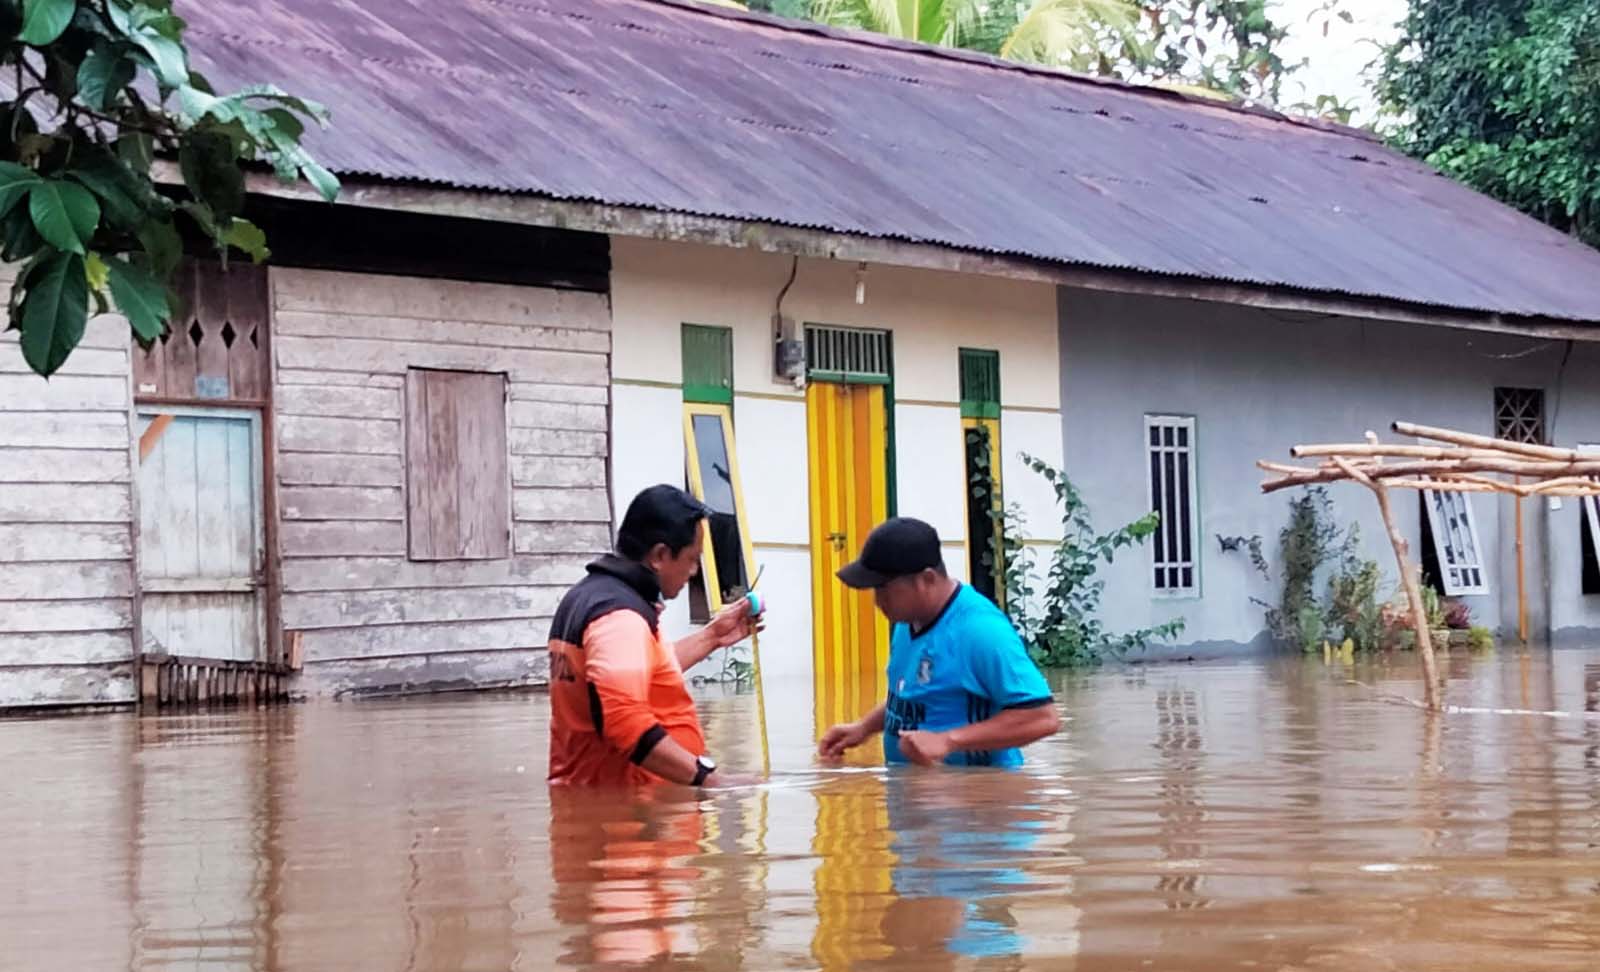 Bnjir yang terjadi di Ketapang, Kalimantan Barat, Febrari 2022. Bencana ekologis, seperti banjir, longsor dan lain-lain datang bertubi di Indonesia menandakan krisis lingkungan makin parah. Foto: BNPB